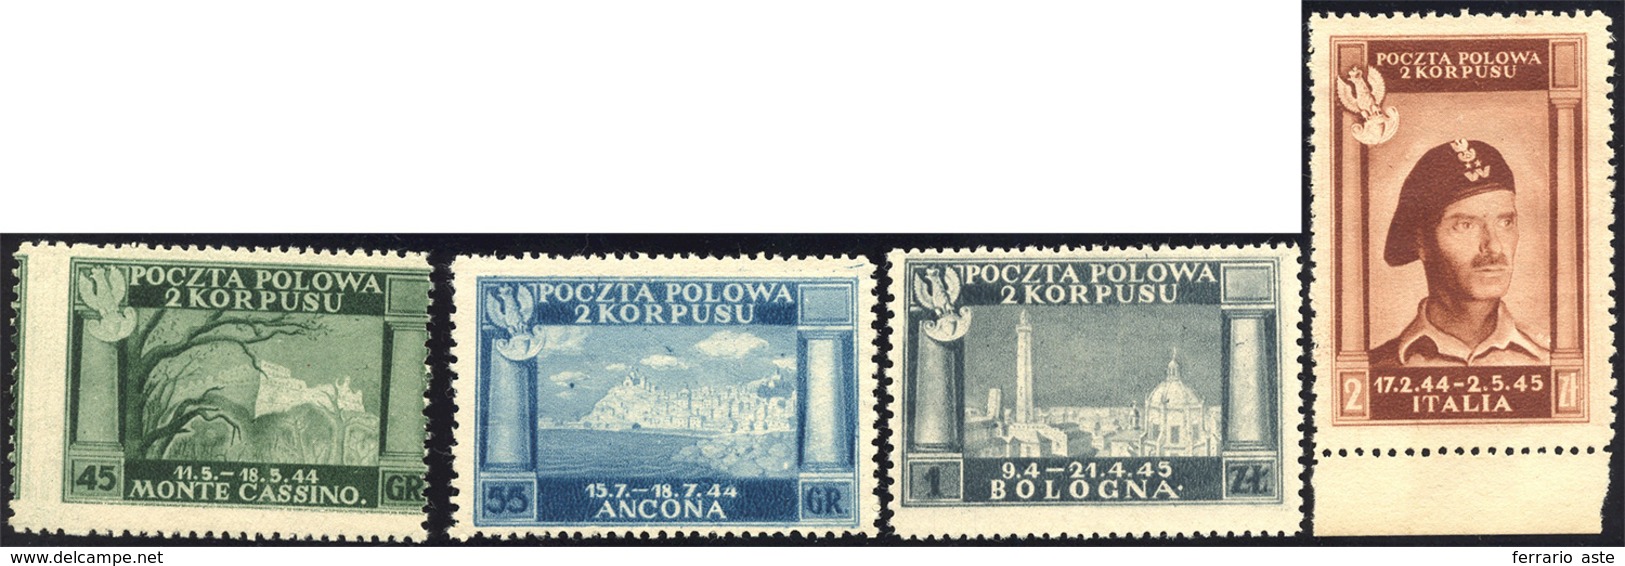 2158 1946 - Vittorie Polacche, Carta Bianca (5/8), Senza Gomma Come Sempre, Perfetti.... - 1946-47 Période Corpo Polacco